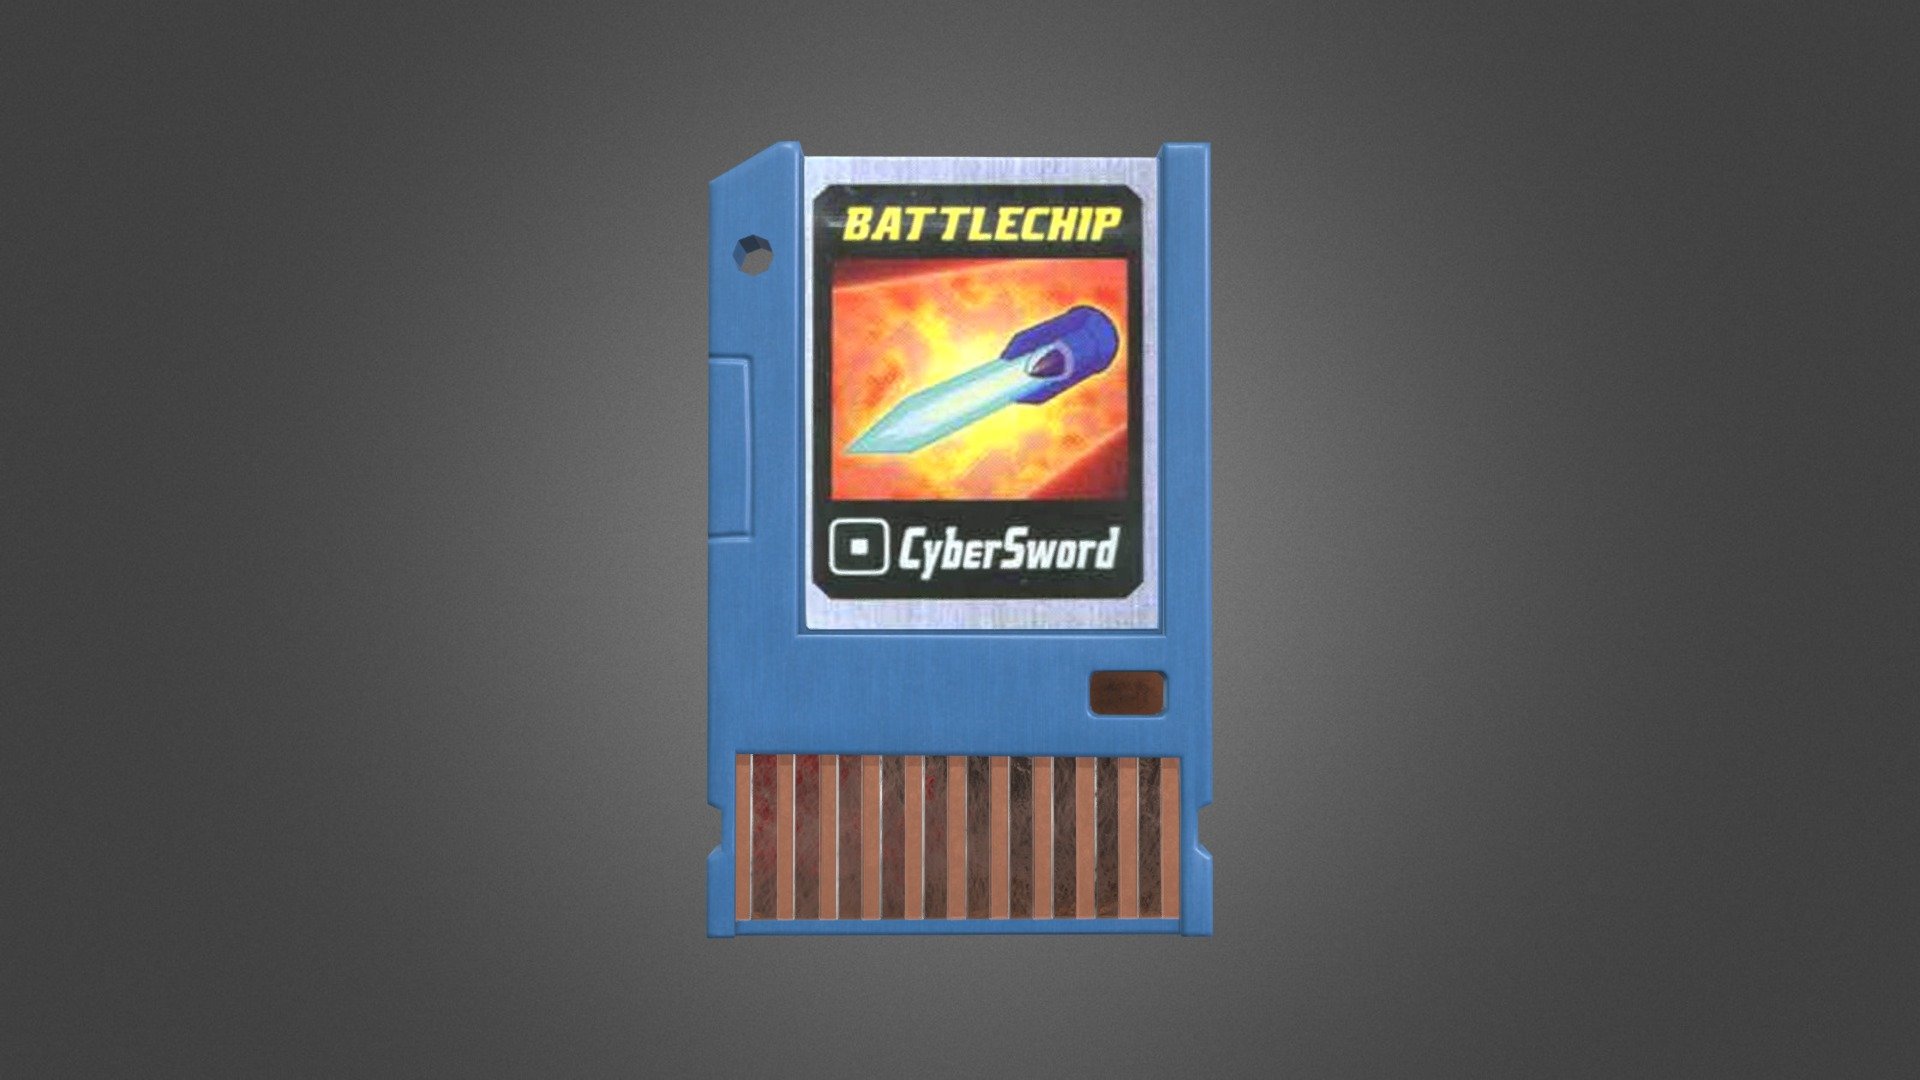 megaman-battle-chip-download-free-3d-model-by-luwke-f4331c5-sketchfab